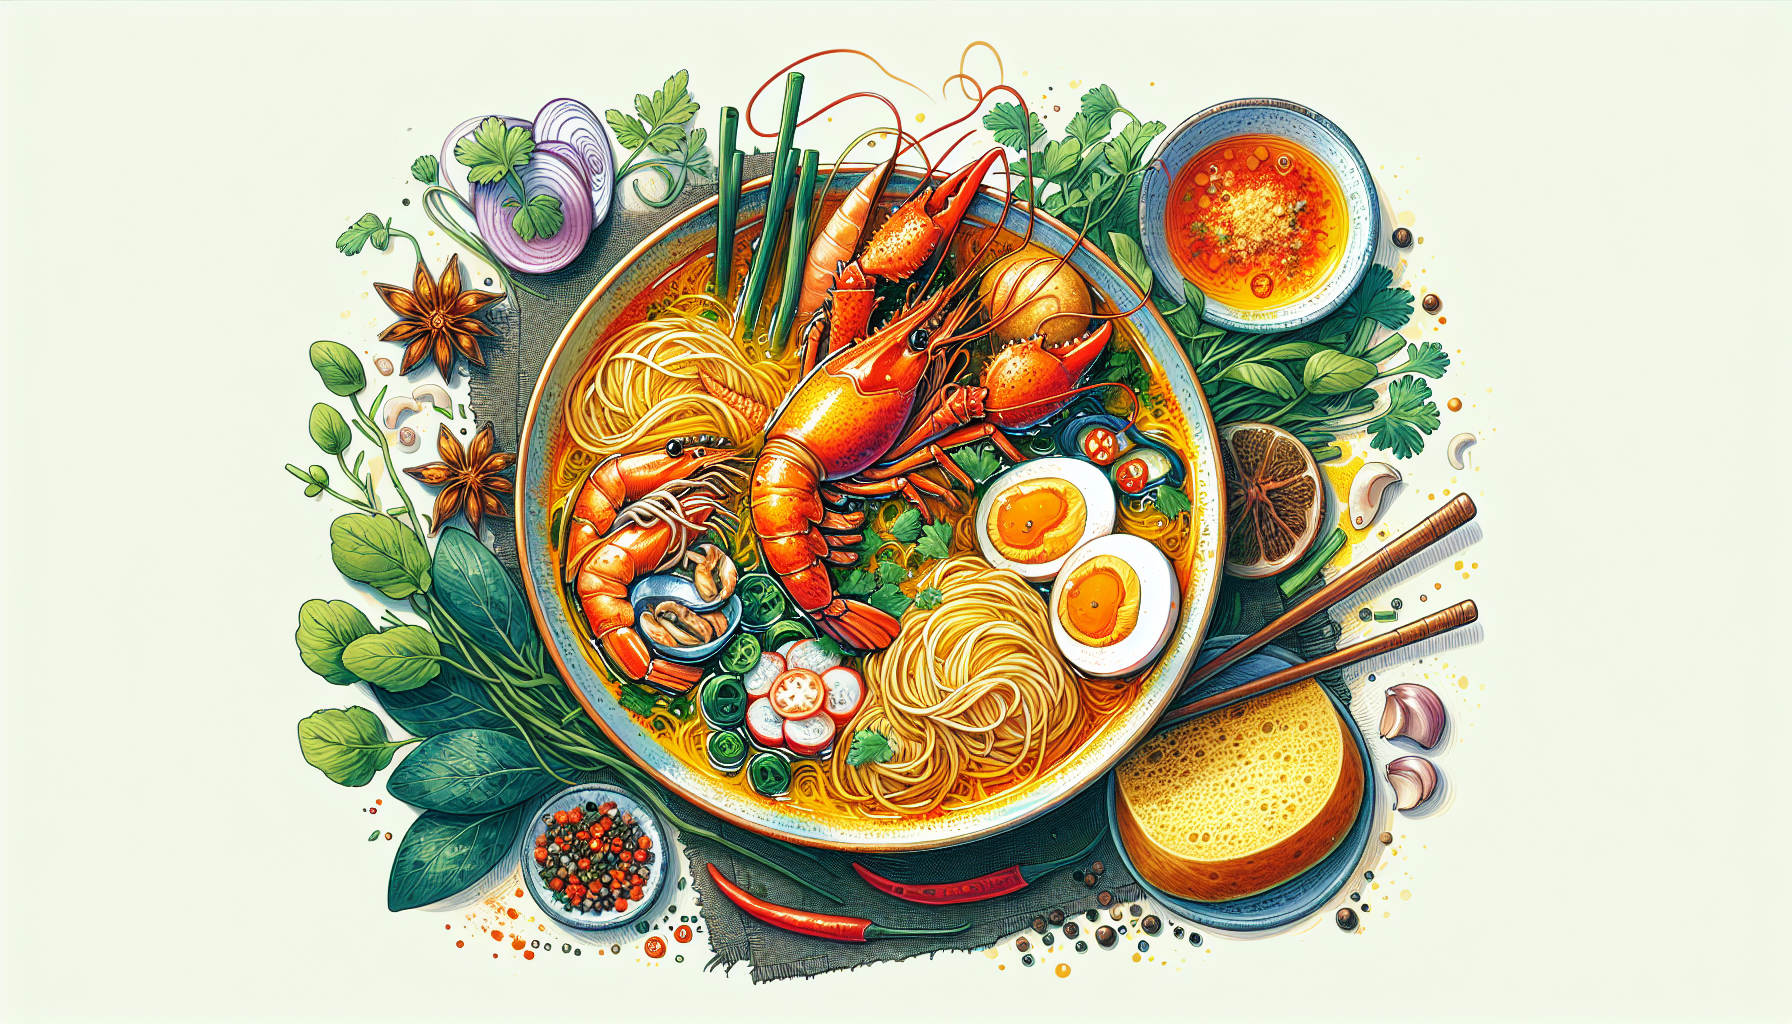 Mì Quảng: Một món ăn truyền thống của miền Trung Việt Nam, được làm từ bánh mì sợi và các loại hải sản như tôm, cua, mực.